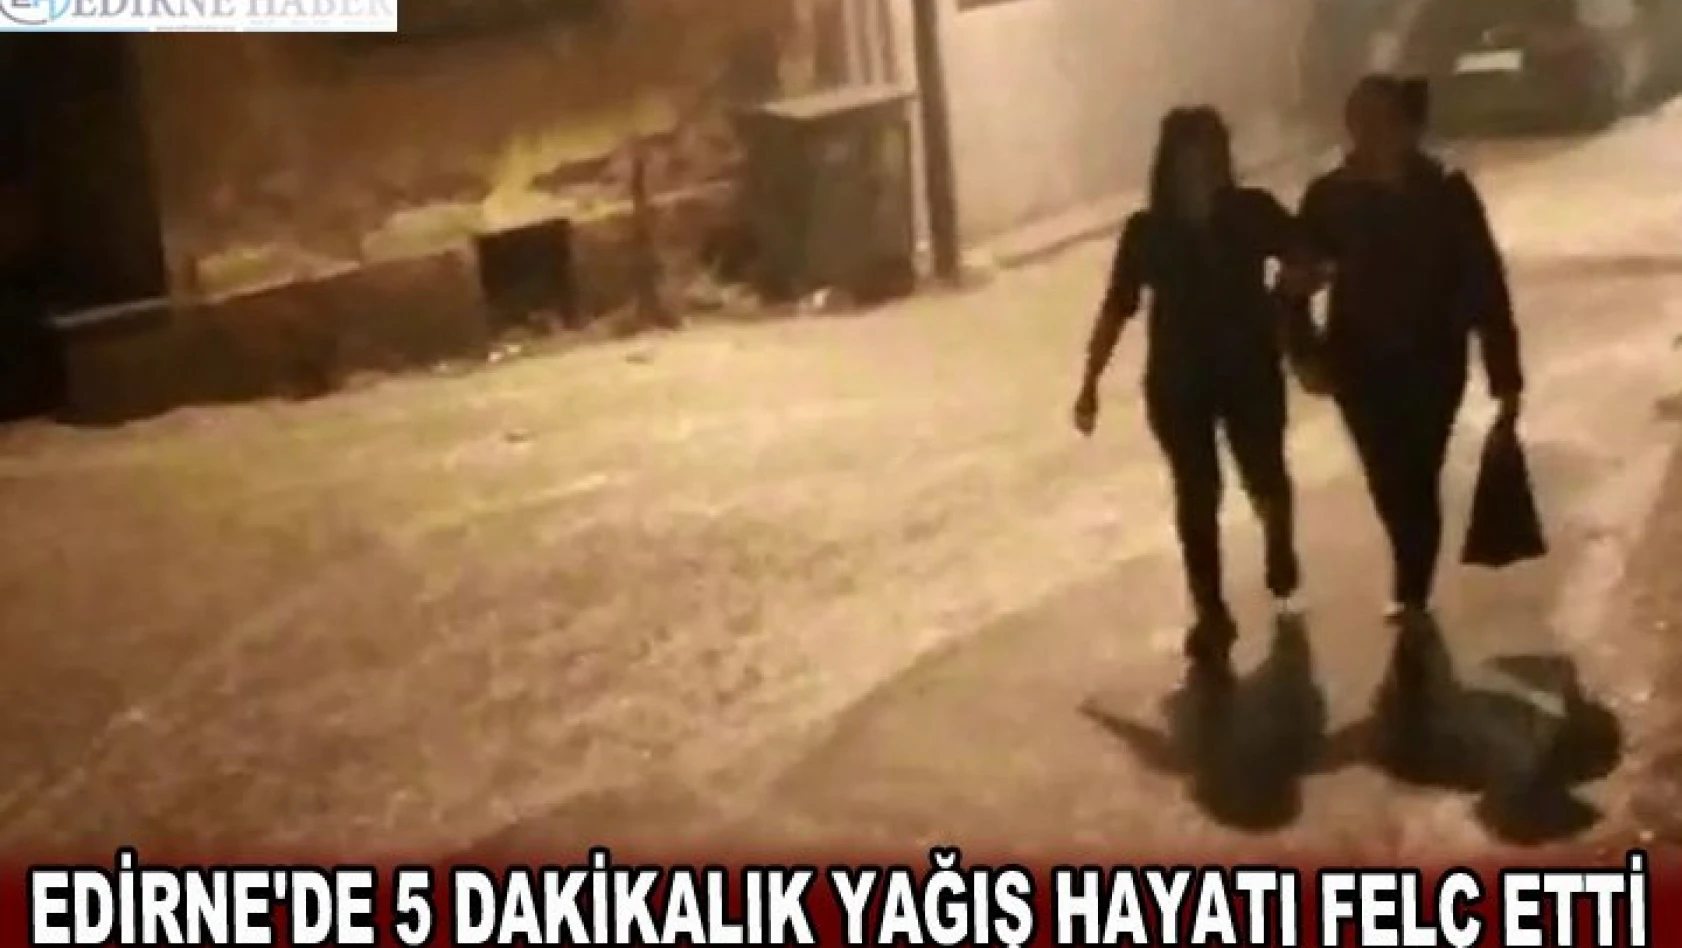 Edirne'ye 5 dakikalık yağış hayatı felç etti